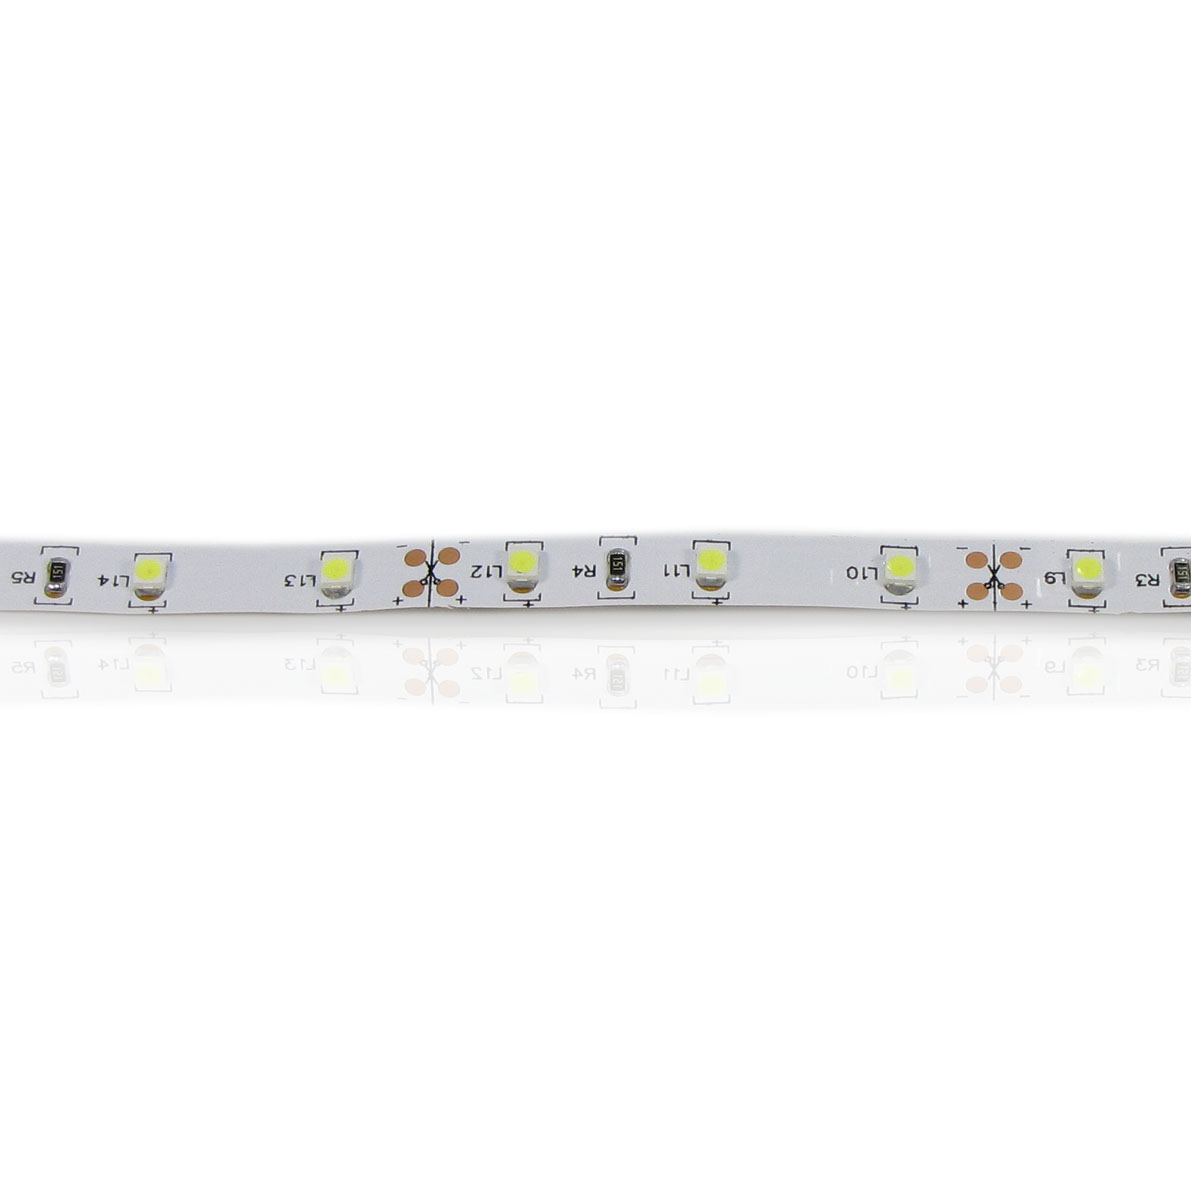 светодиодная лента standart pro class, 3528, 60 led/m, white, 12v, ip20, b11, артикул 26948